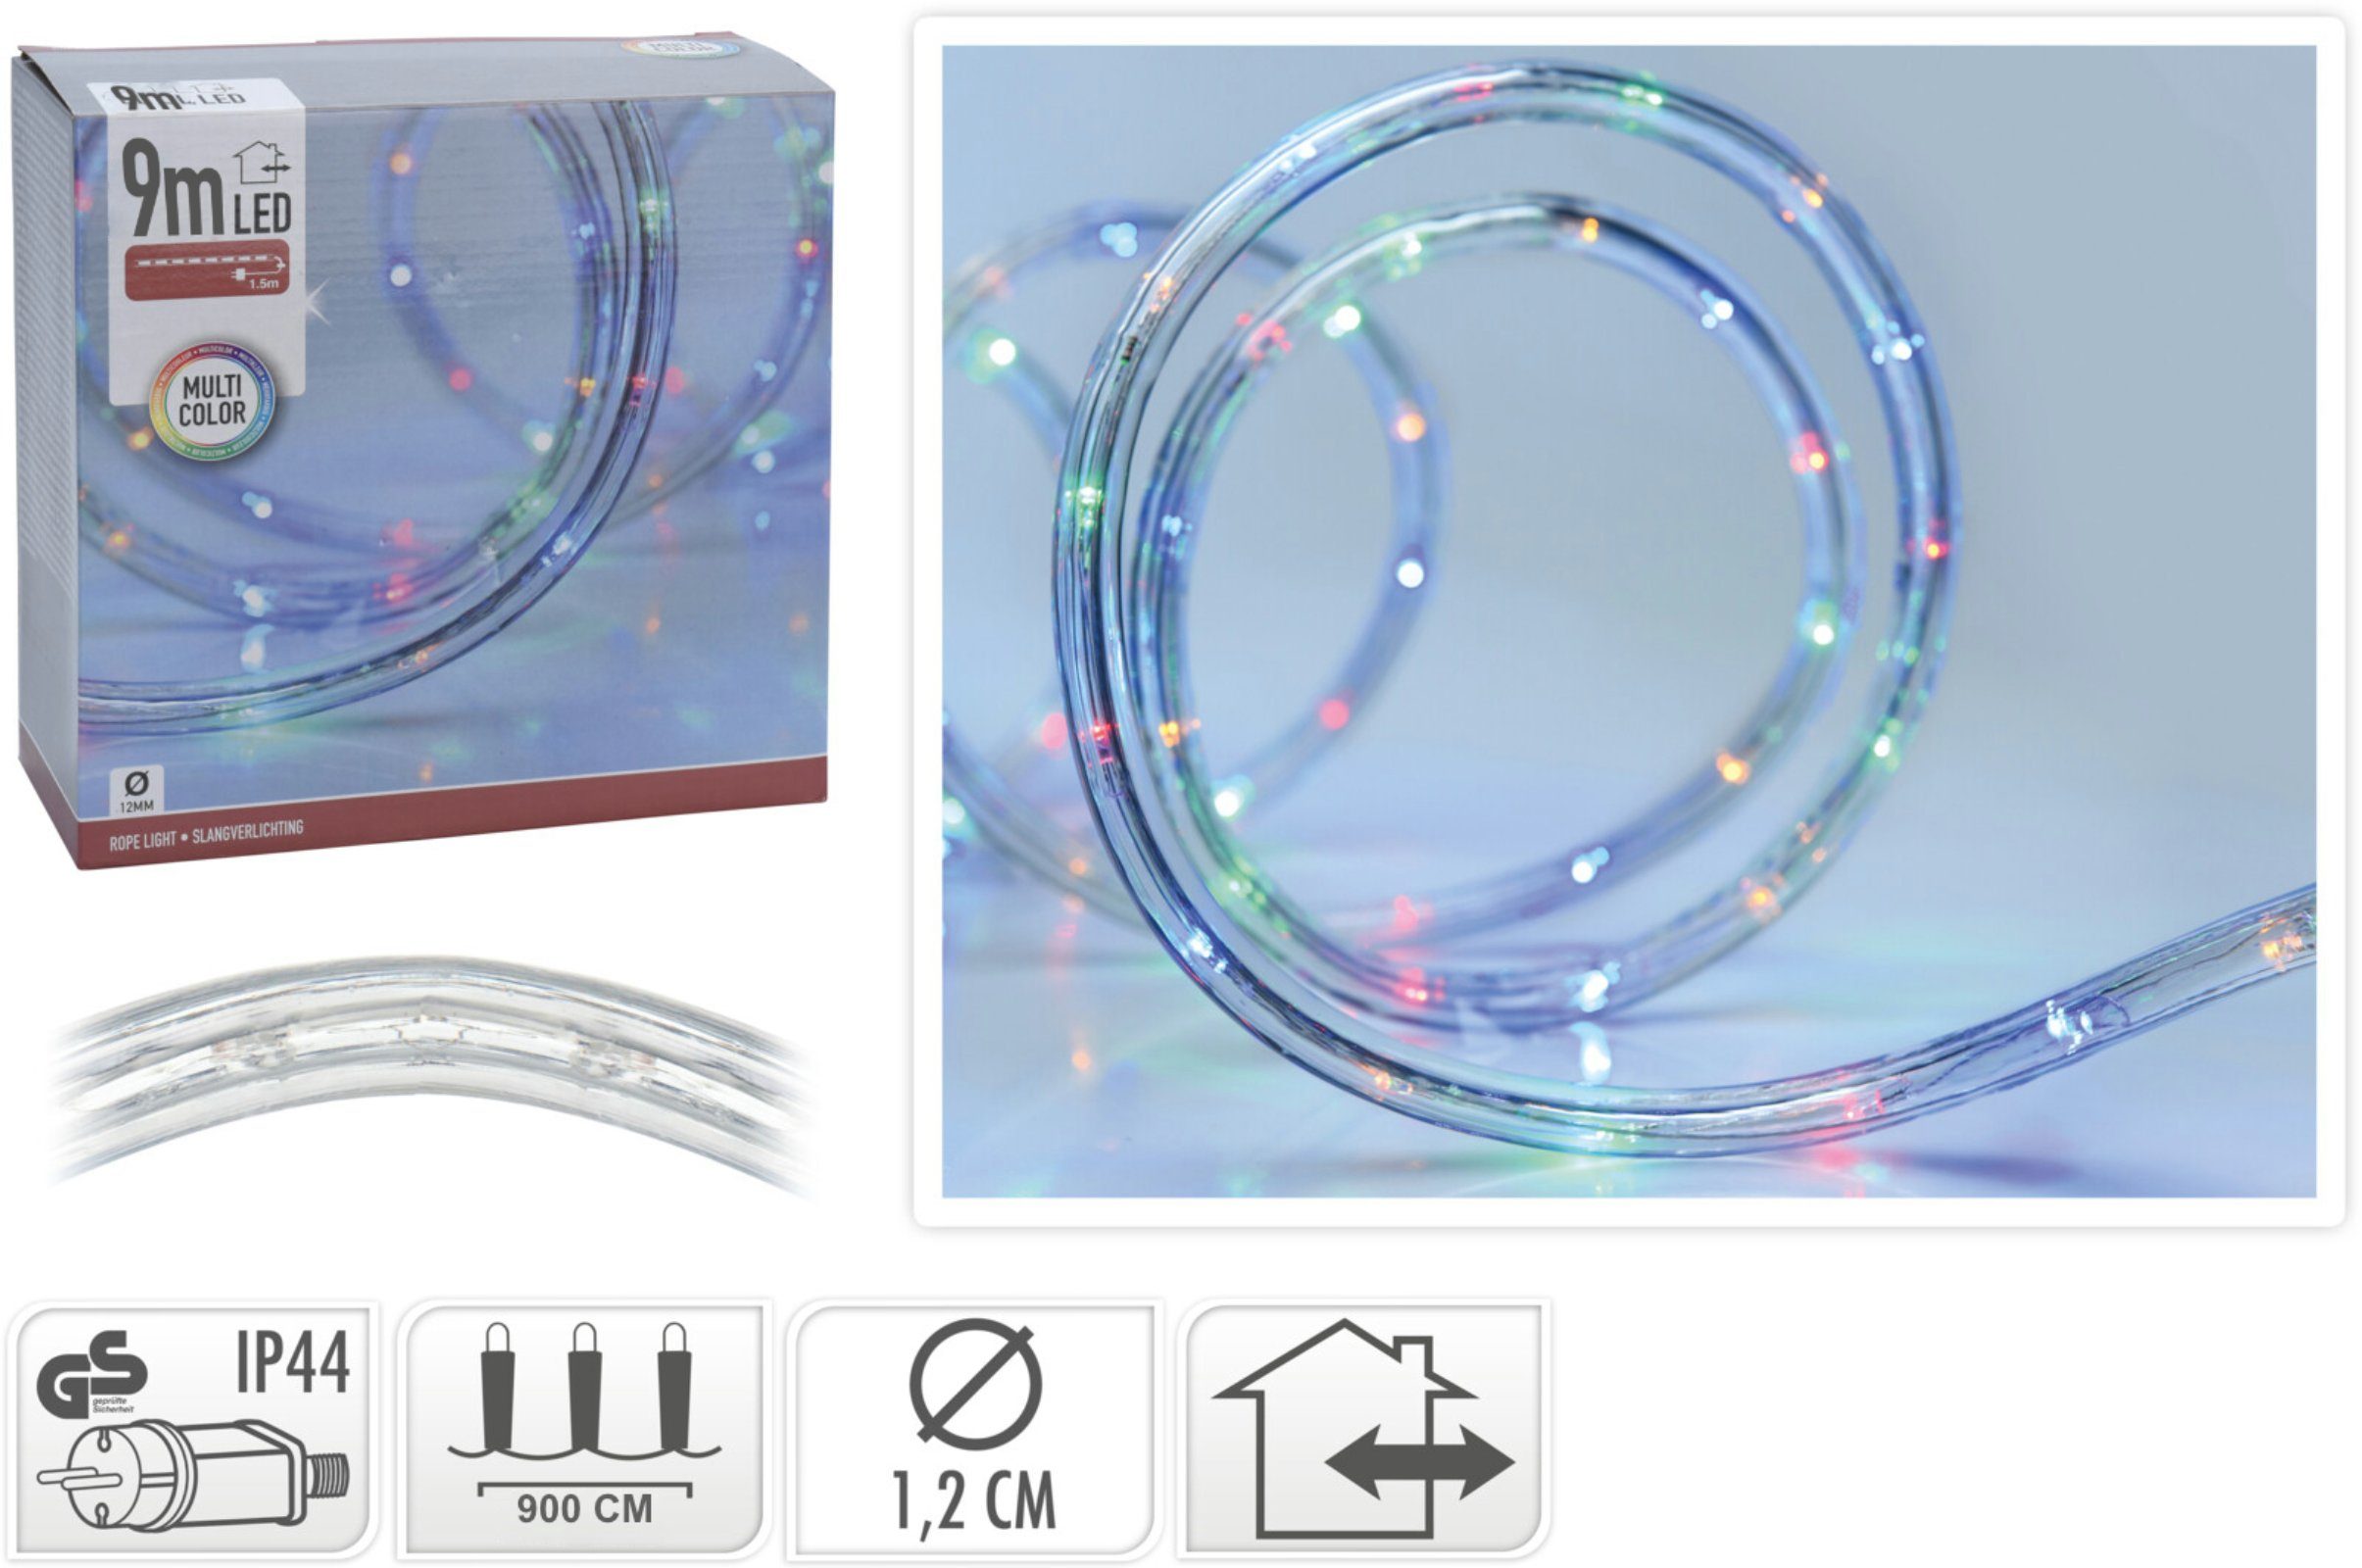 SELF IMPORT AGENCIES LED-Lichterschlauch XX540, Bunt 8 Modis LED´s verschiedene Speicherchip